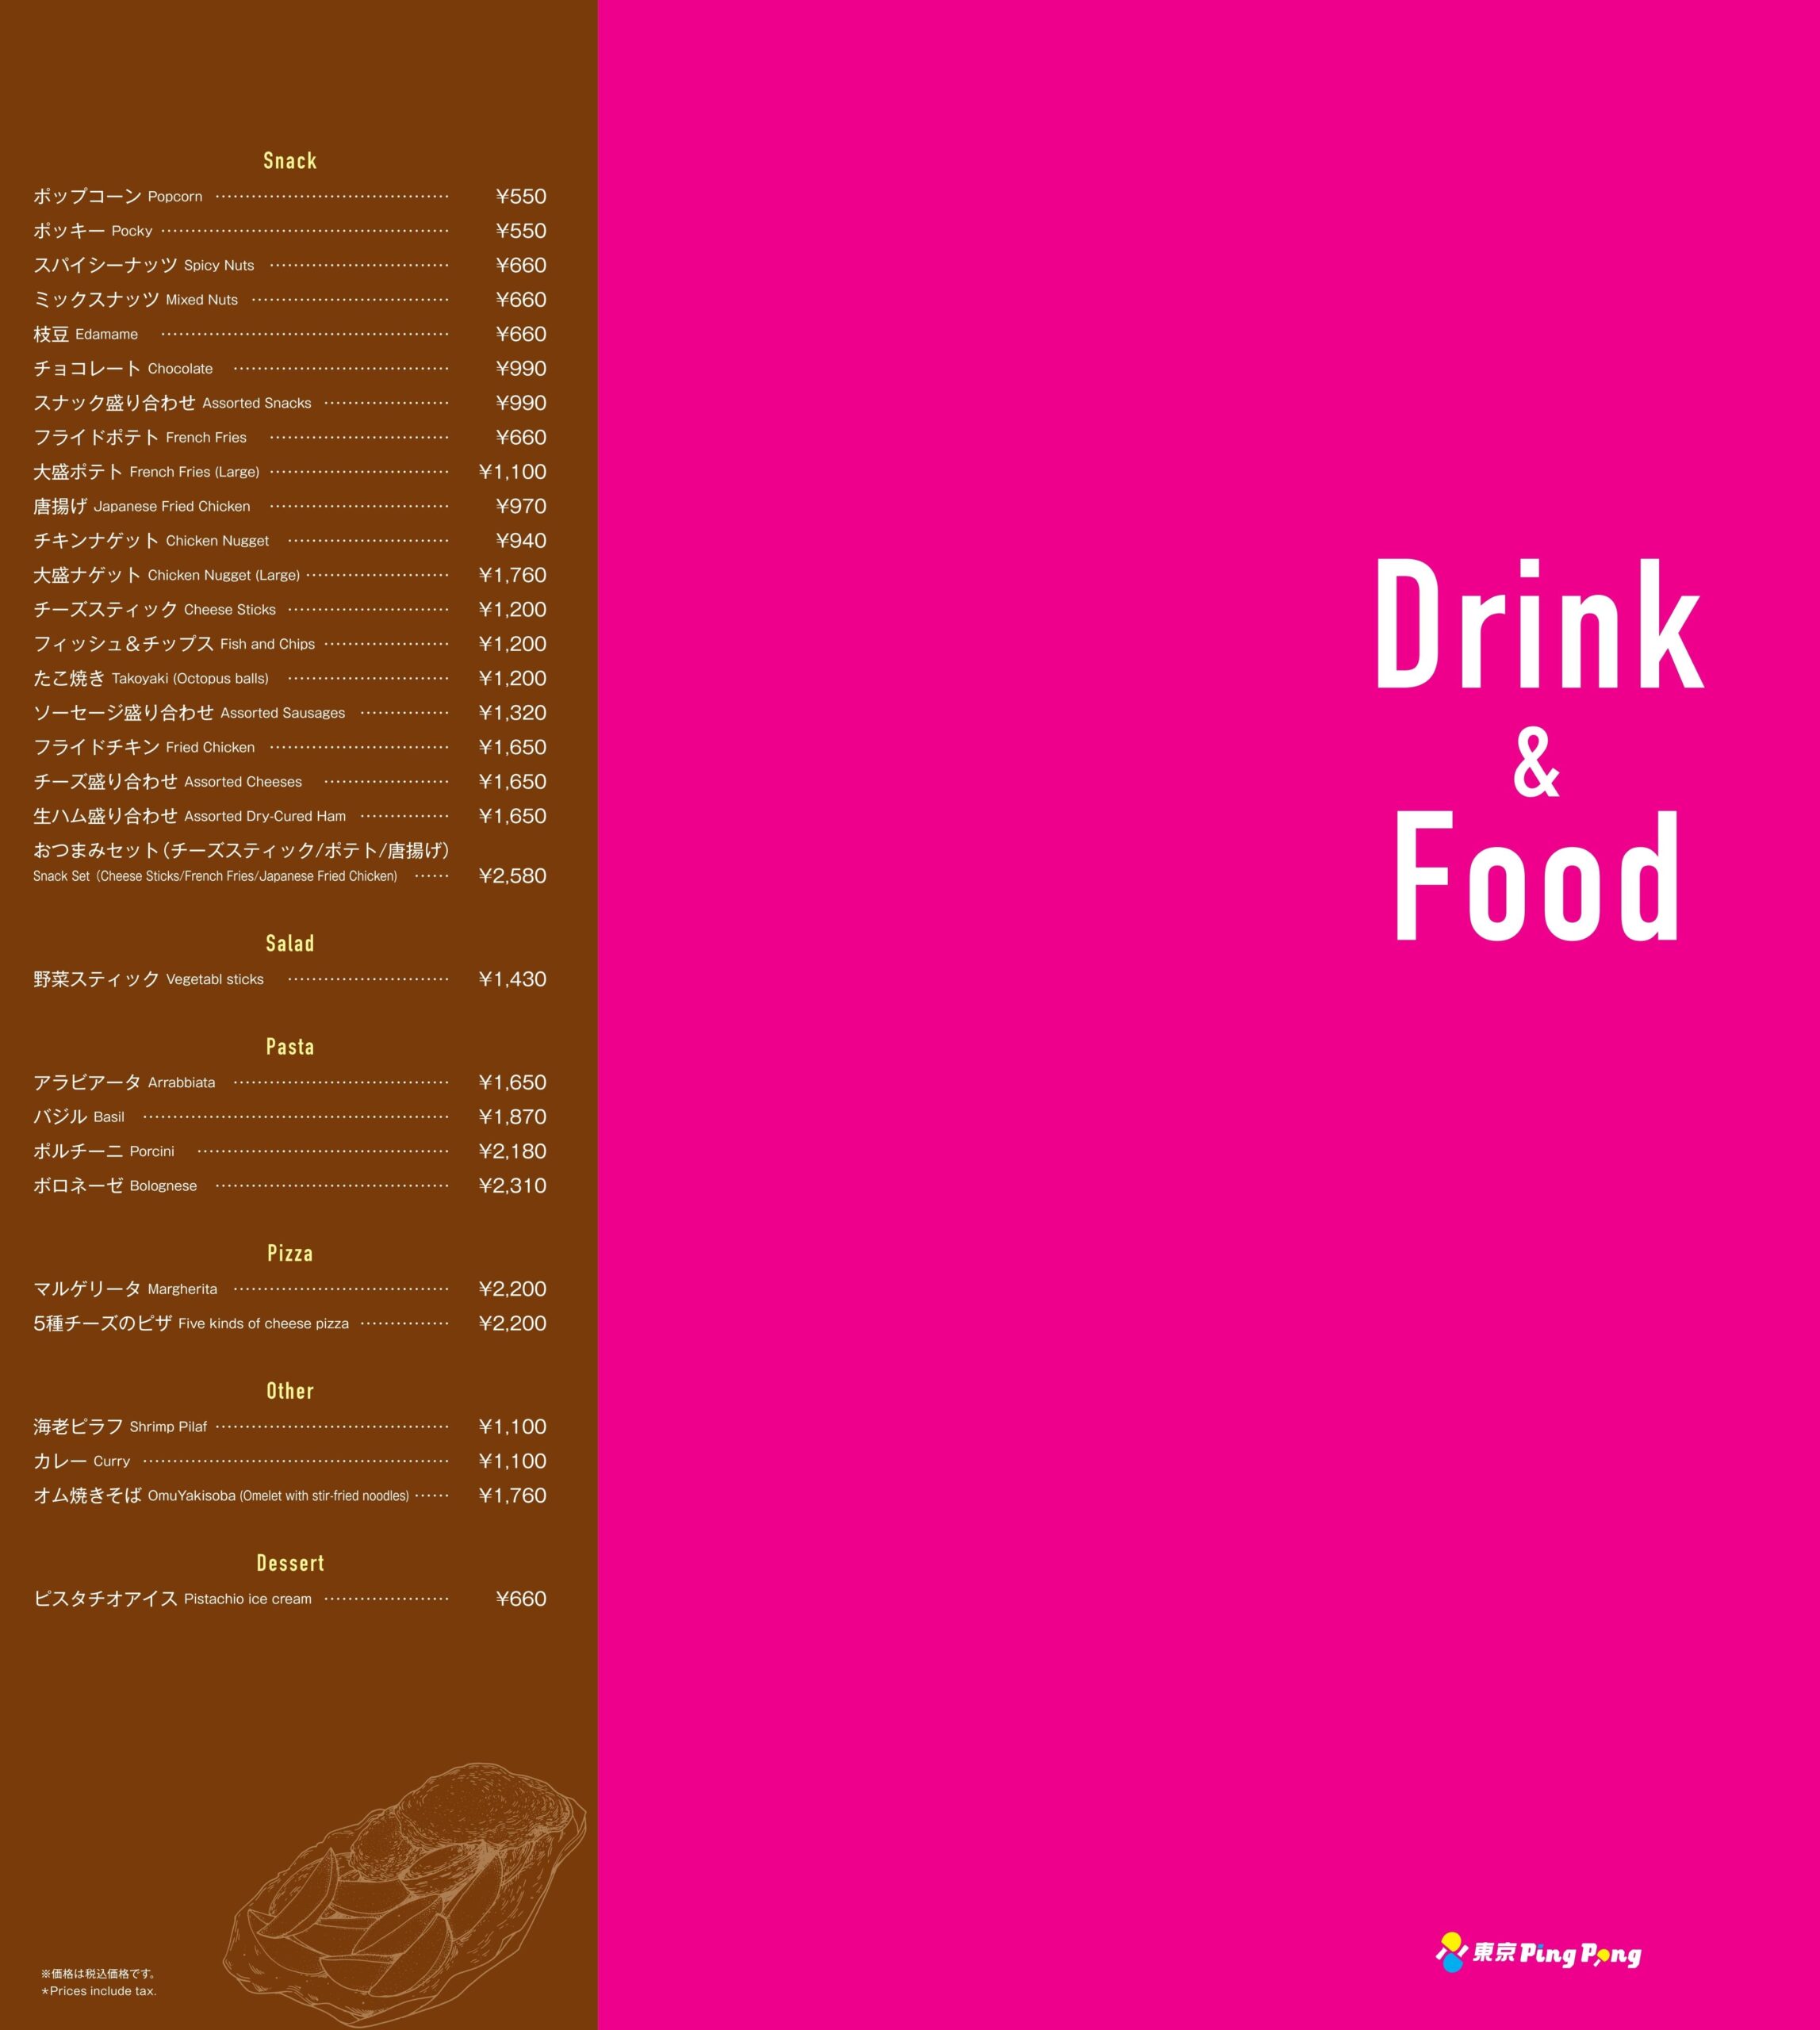 Drink & Food